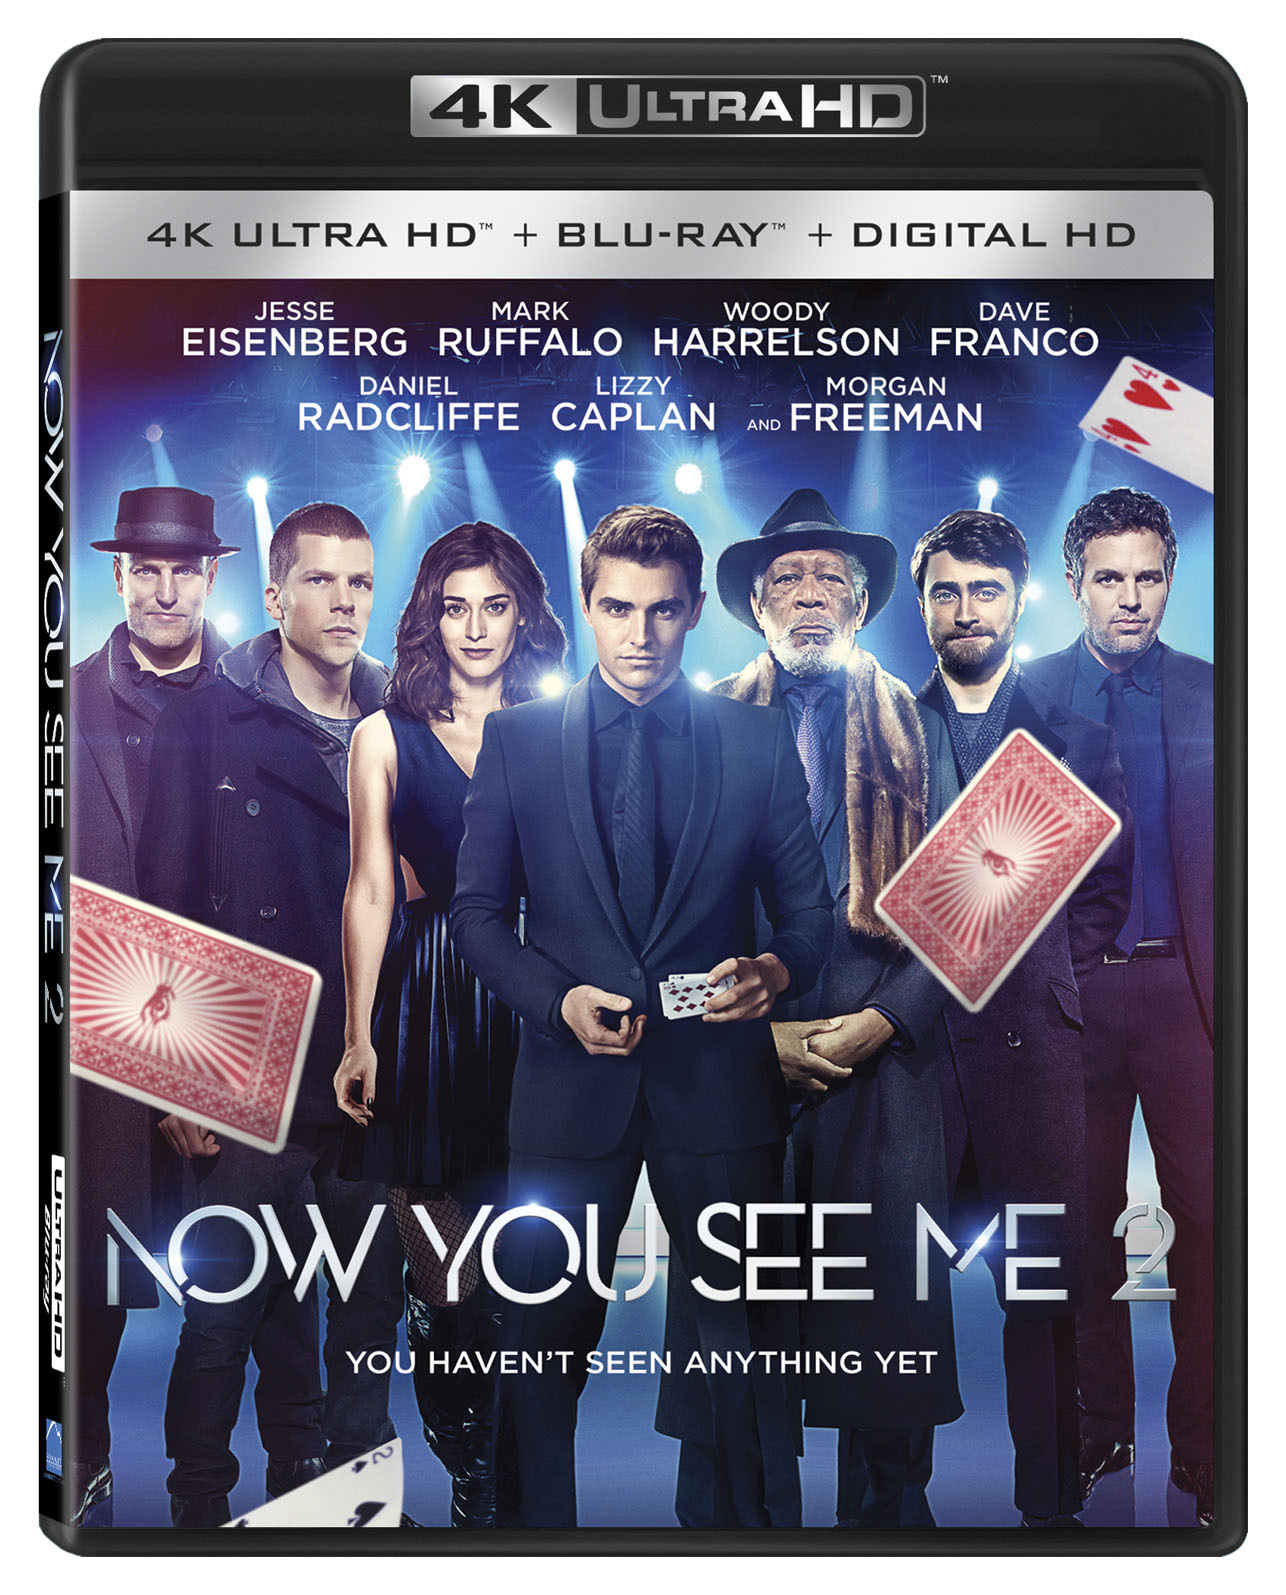 Now You See Me 2 (4K Ultra HD + Blu-ray) - UHD [ 2016 ]  - Drama Movies On 4K Ultra HD Blu-ray - Movies On GRUV